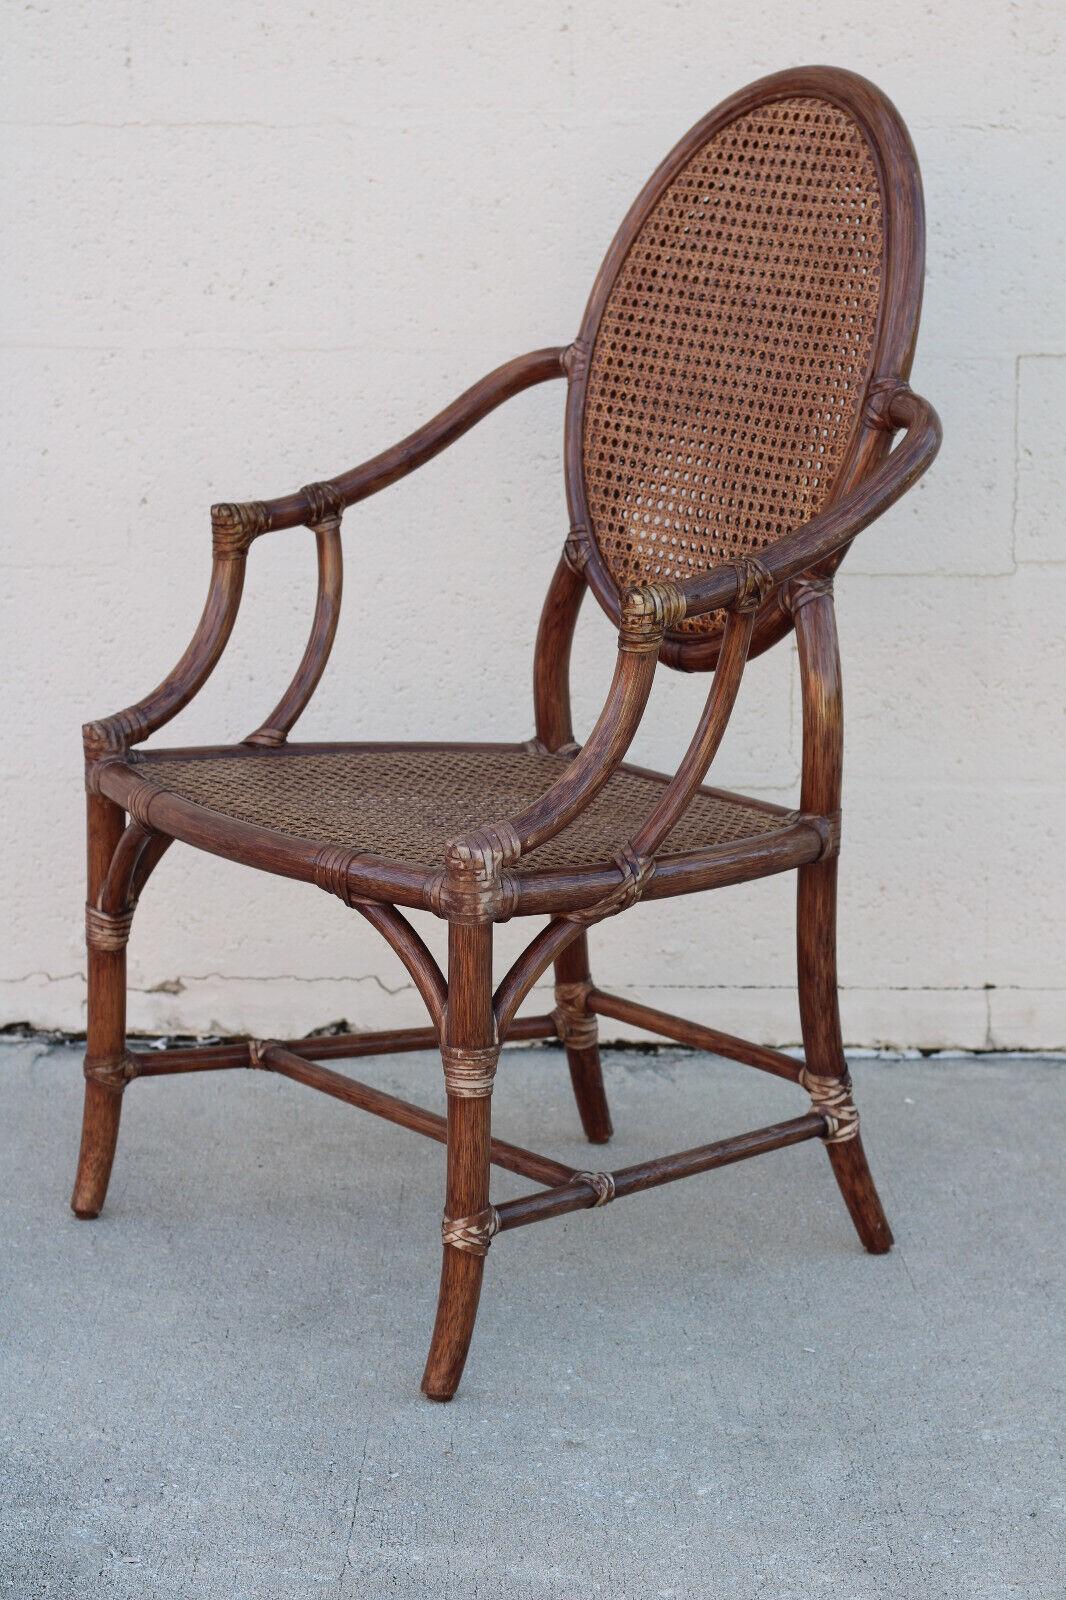 Ein Satz von vier anmutigen und luftigen Esszimmerstühlen, entworfen von der bahnbrechenden Innovatorin Elinor McGuire. Die Stühle haben eine ovale Rückenlehne aus Rattan mit doppelter Öffnung und die ursprüngliche tabakbraune Oberfläche. Diese